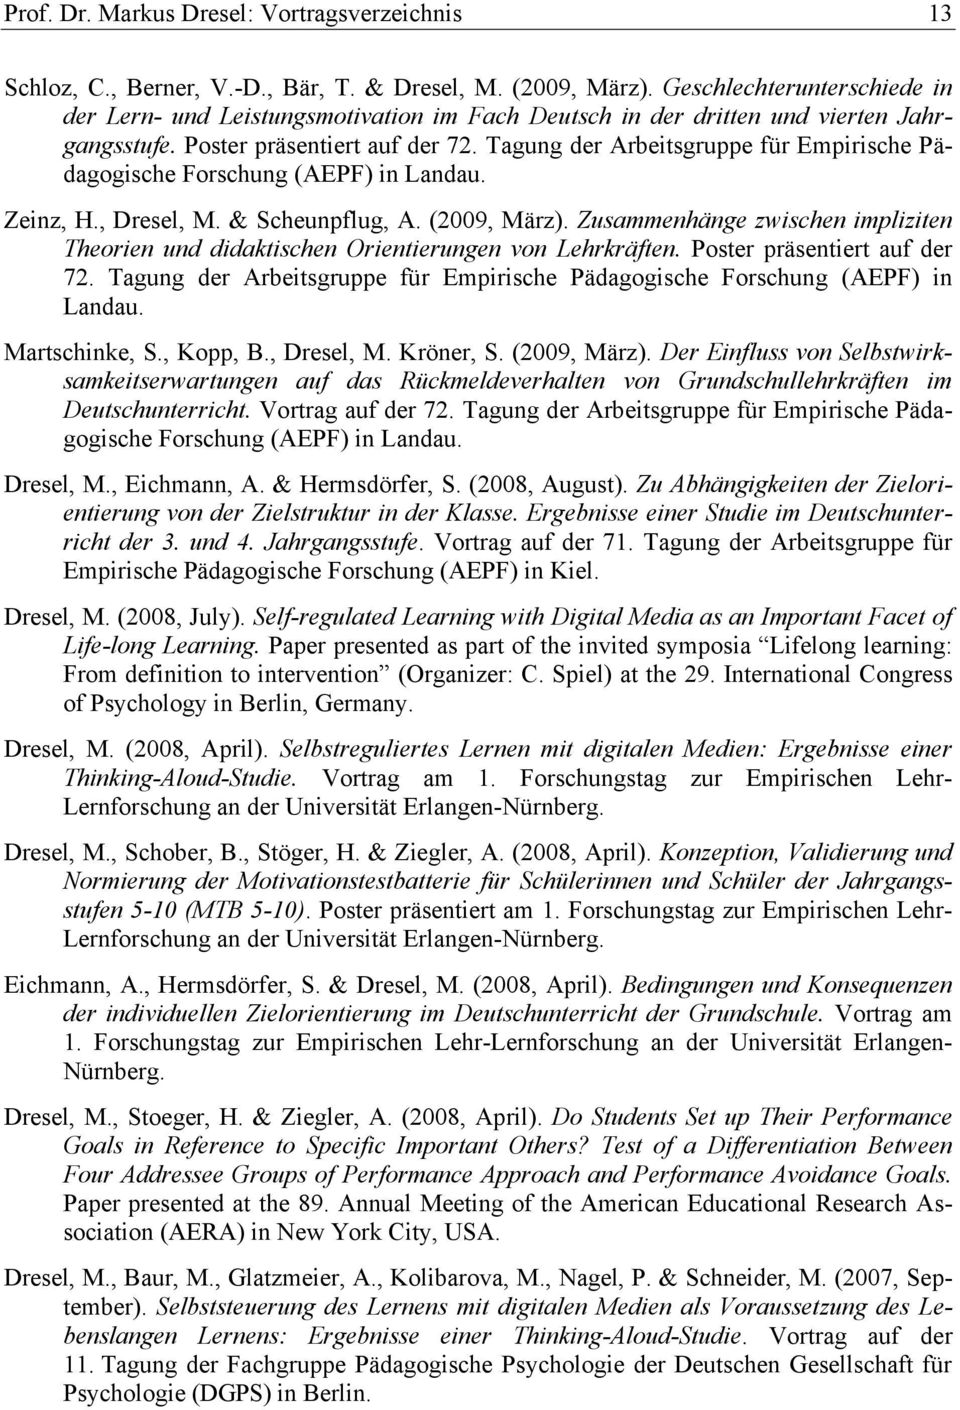 Tagung der Arbeitsgruppe für Empirische Pädagogische Forschung (AEPF) in Landau. Zeinz, H., Dresel, M. & Scheunpflug, A. (2009, März).